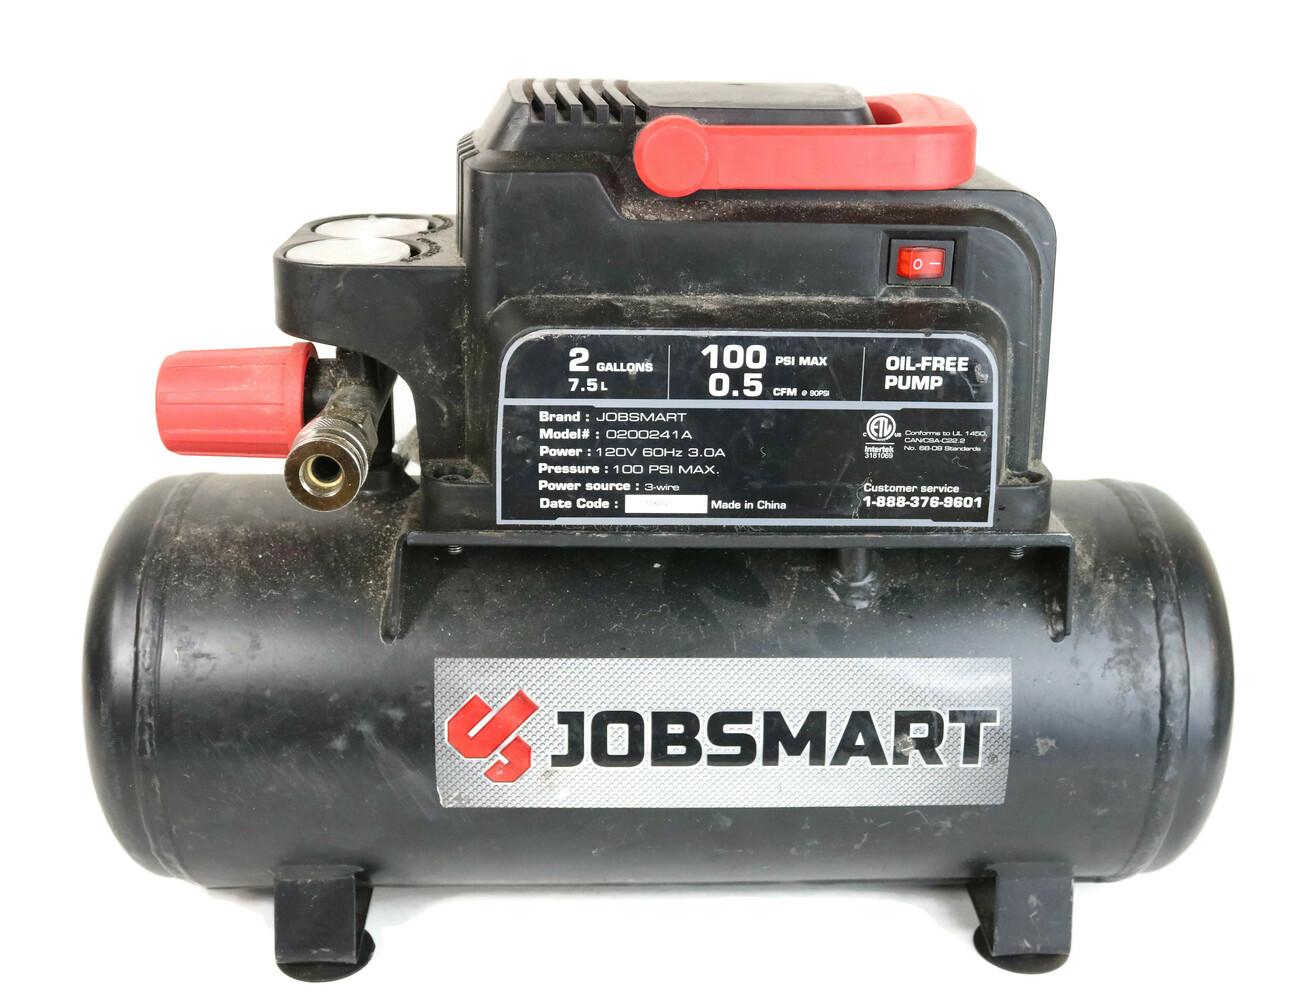 jobsmart air compressor